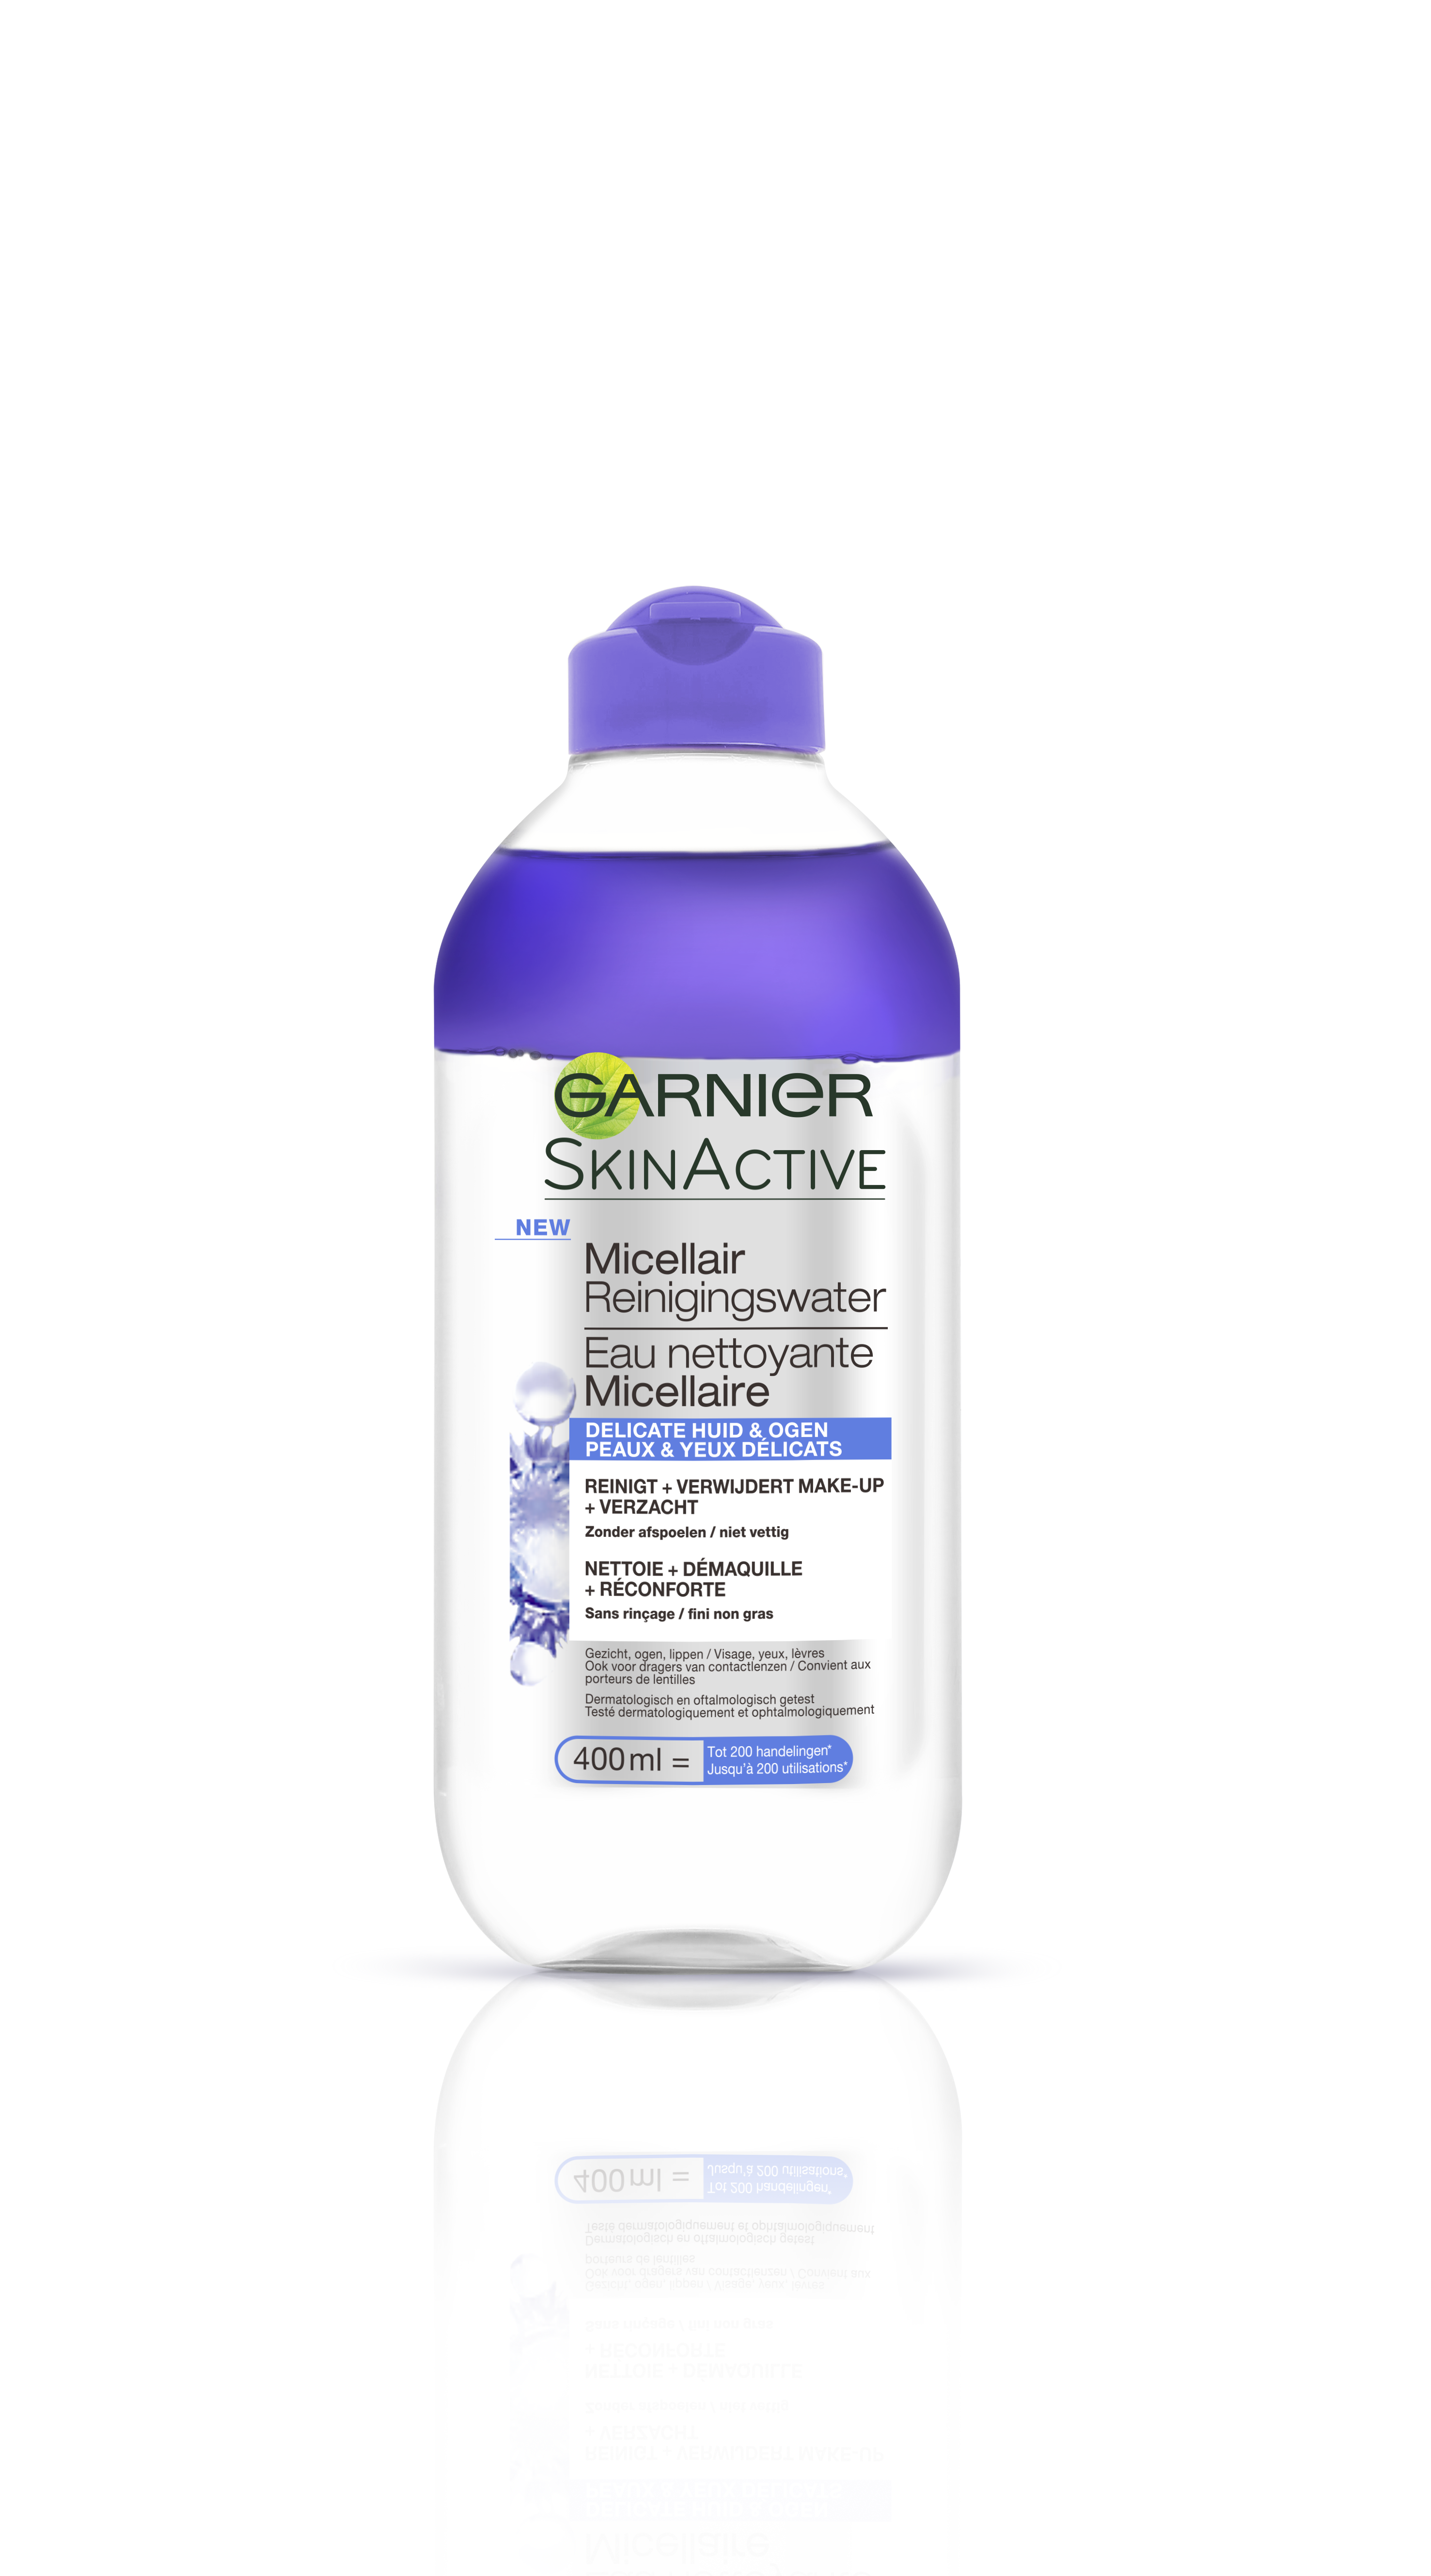 Garnier Skinactive Face Micellair Reinigingswater Delicate Huid en Ogen - 400 ml